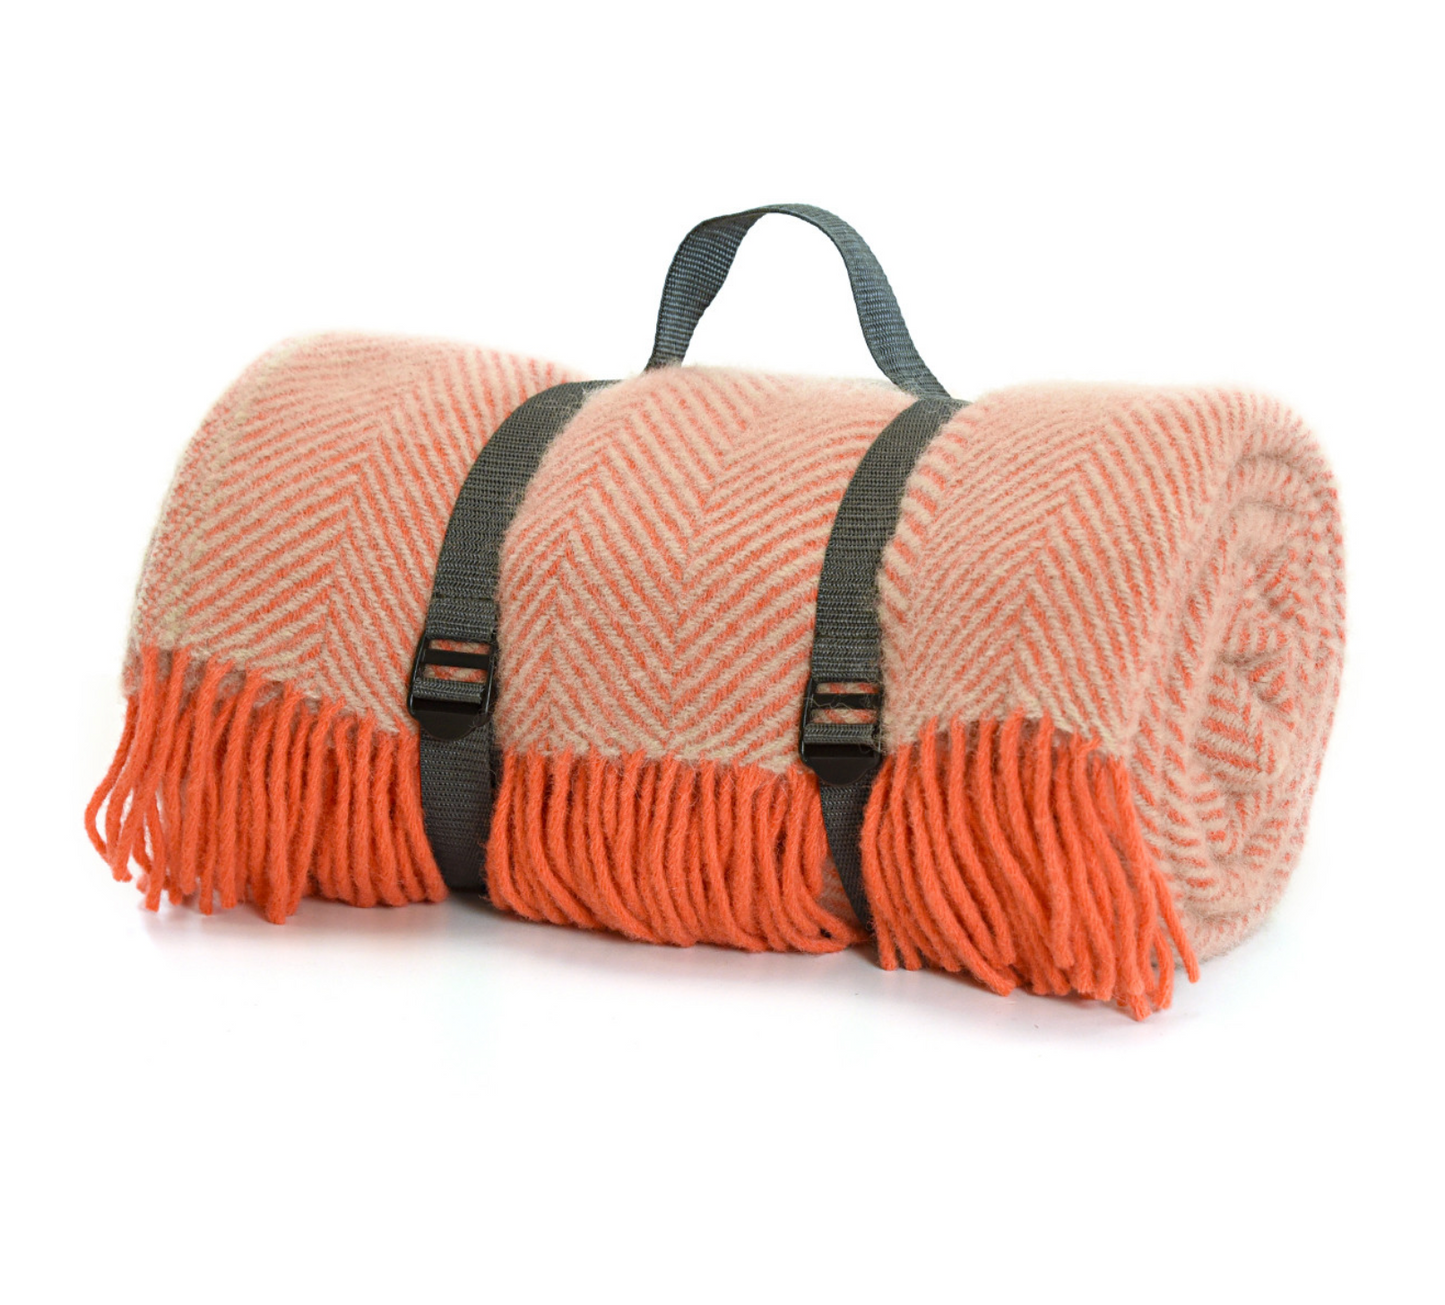 Tweedmill Polo Pure Wool Knitted Picnic Blanket, Herringbone, Flamingo